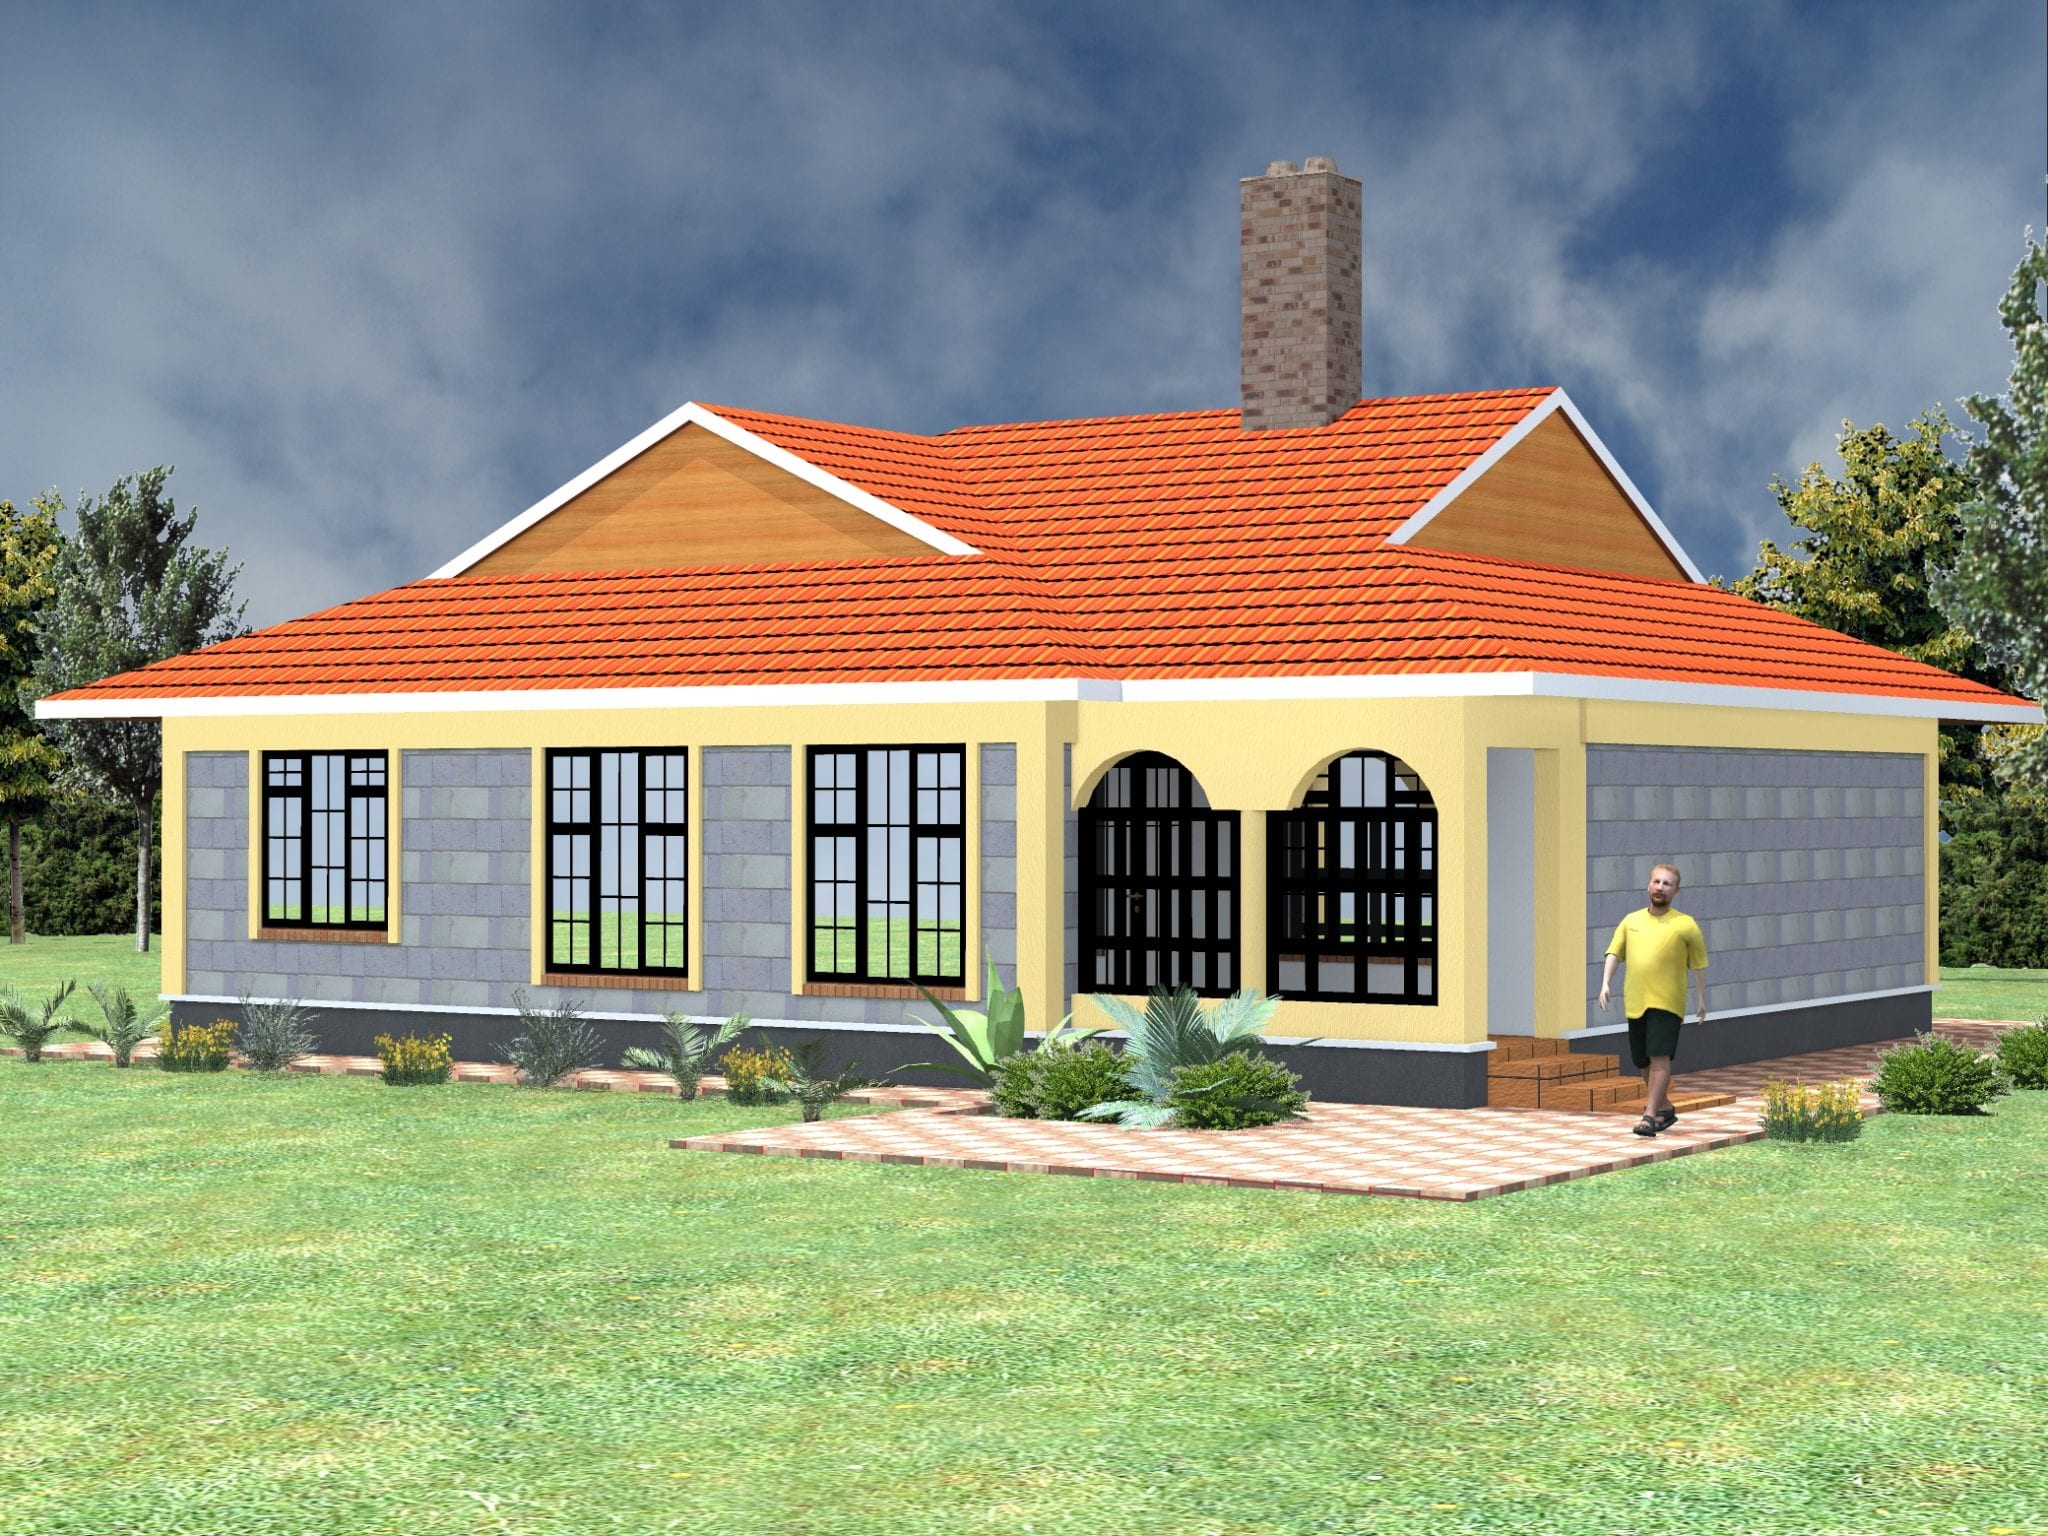 3 Bedroom House Plans In Kenya Pdf Hpd